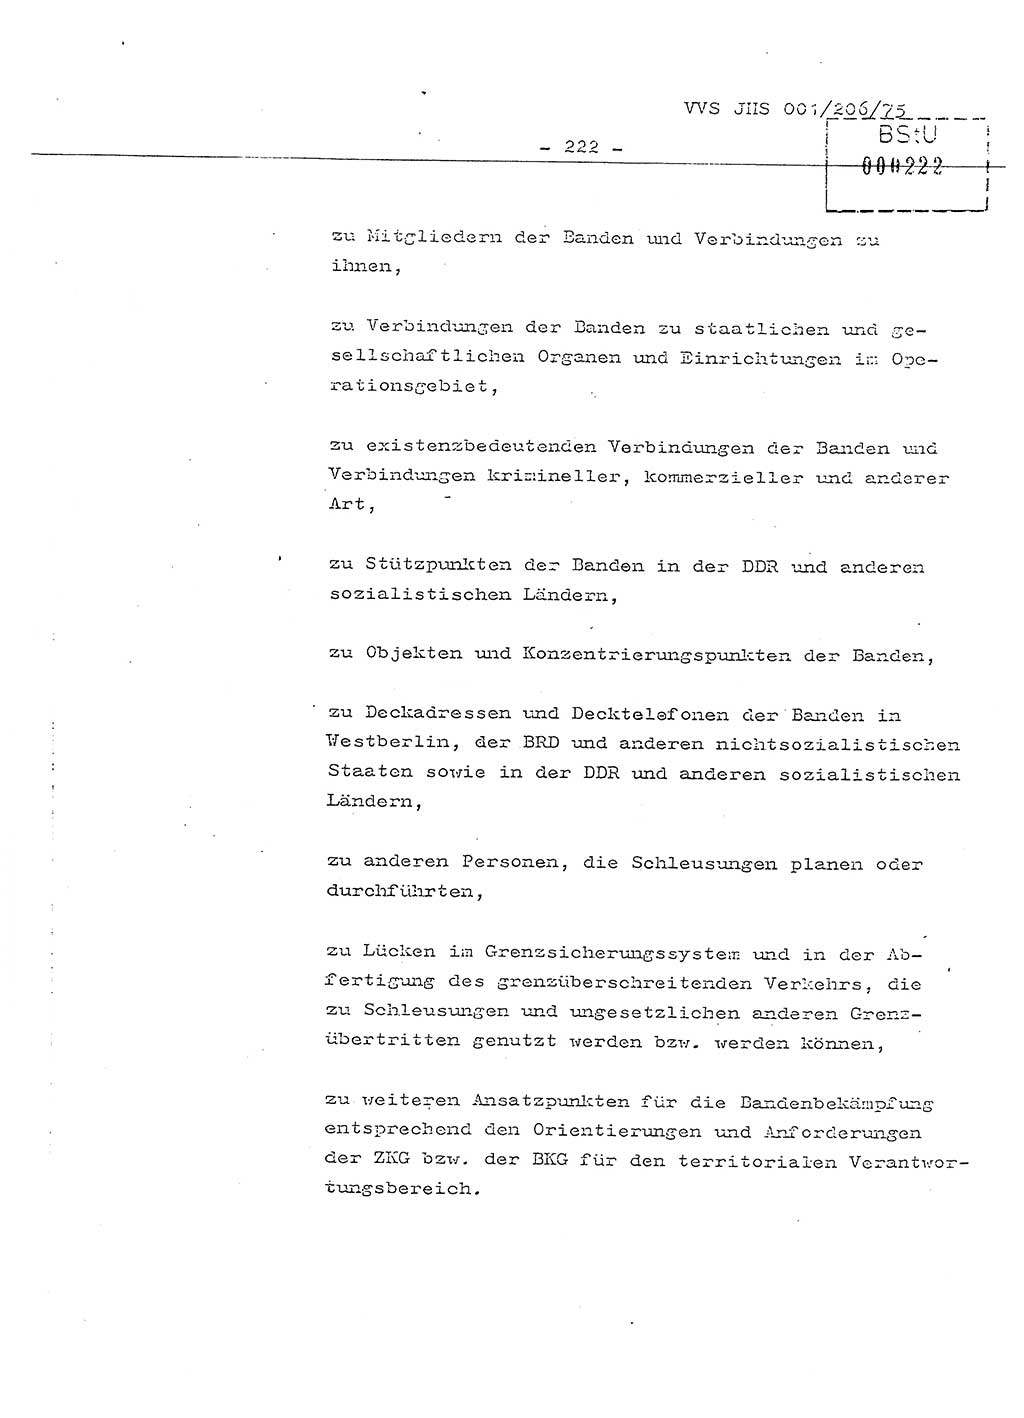 Dissertation Generalmajor Manfred Hummitzsch (Leiter der BV Leipzig), Generalmajor Heinz Fiedler (HA Ⅵ), Oberst Rolf Fister (HA Ⅸ), Ministerium für Staatssicherheit (MfS) [Deutsche Demokratische Republik (DDR)], Juristische Hochschule (JHS), Vertrauliche Verschlußsache (VVS) 001-206/75, Potsdam 1975, Seite 222 (Diss. MfS DDR JHS VVS 001-206/75 1975, S. 222)